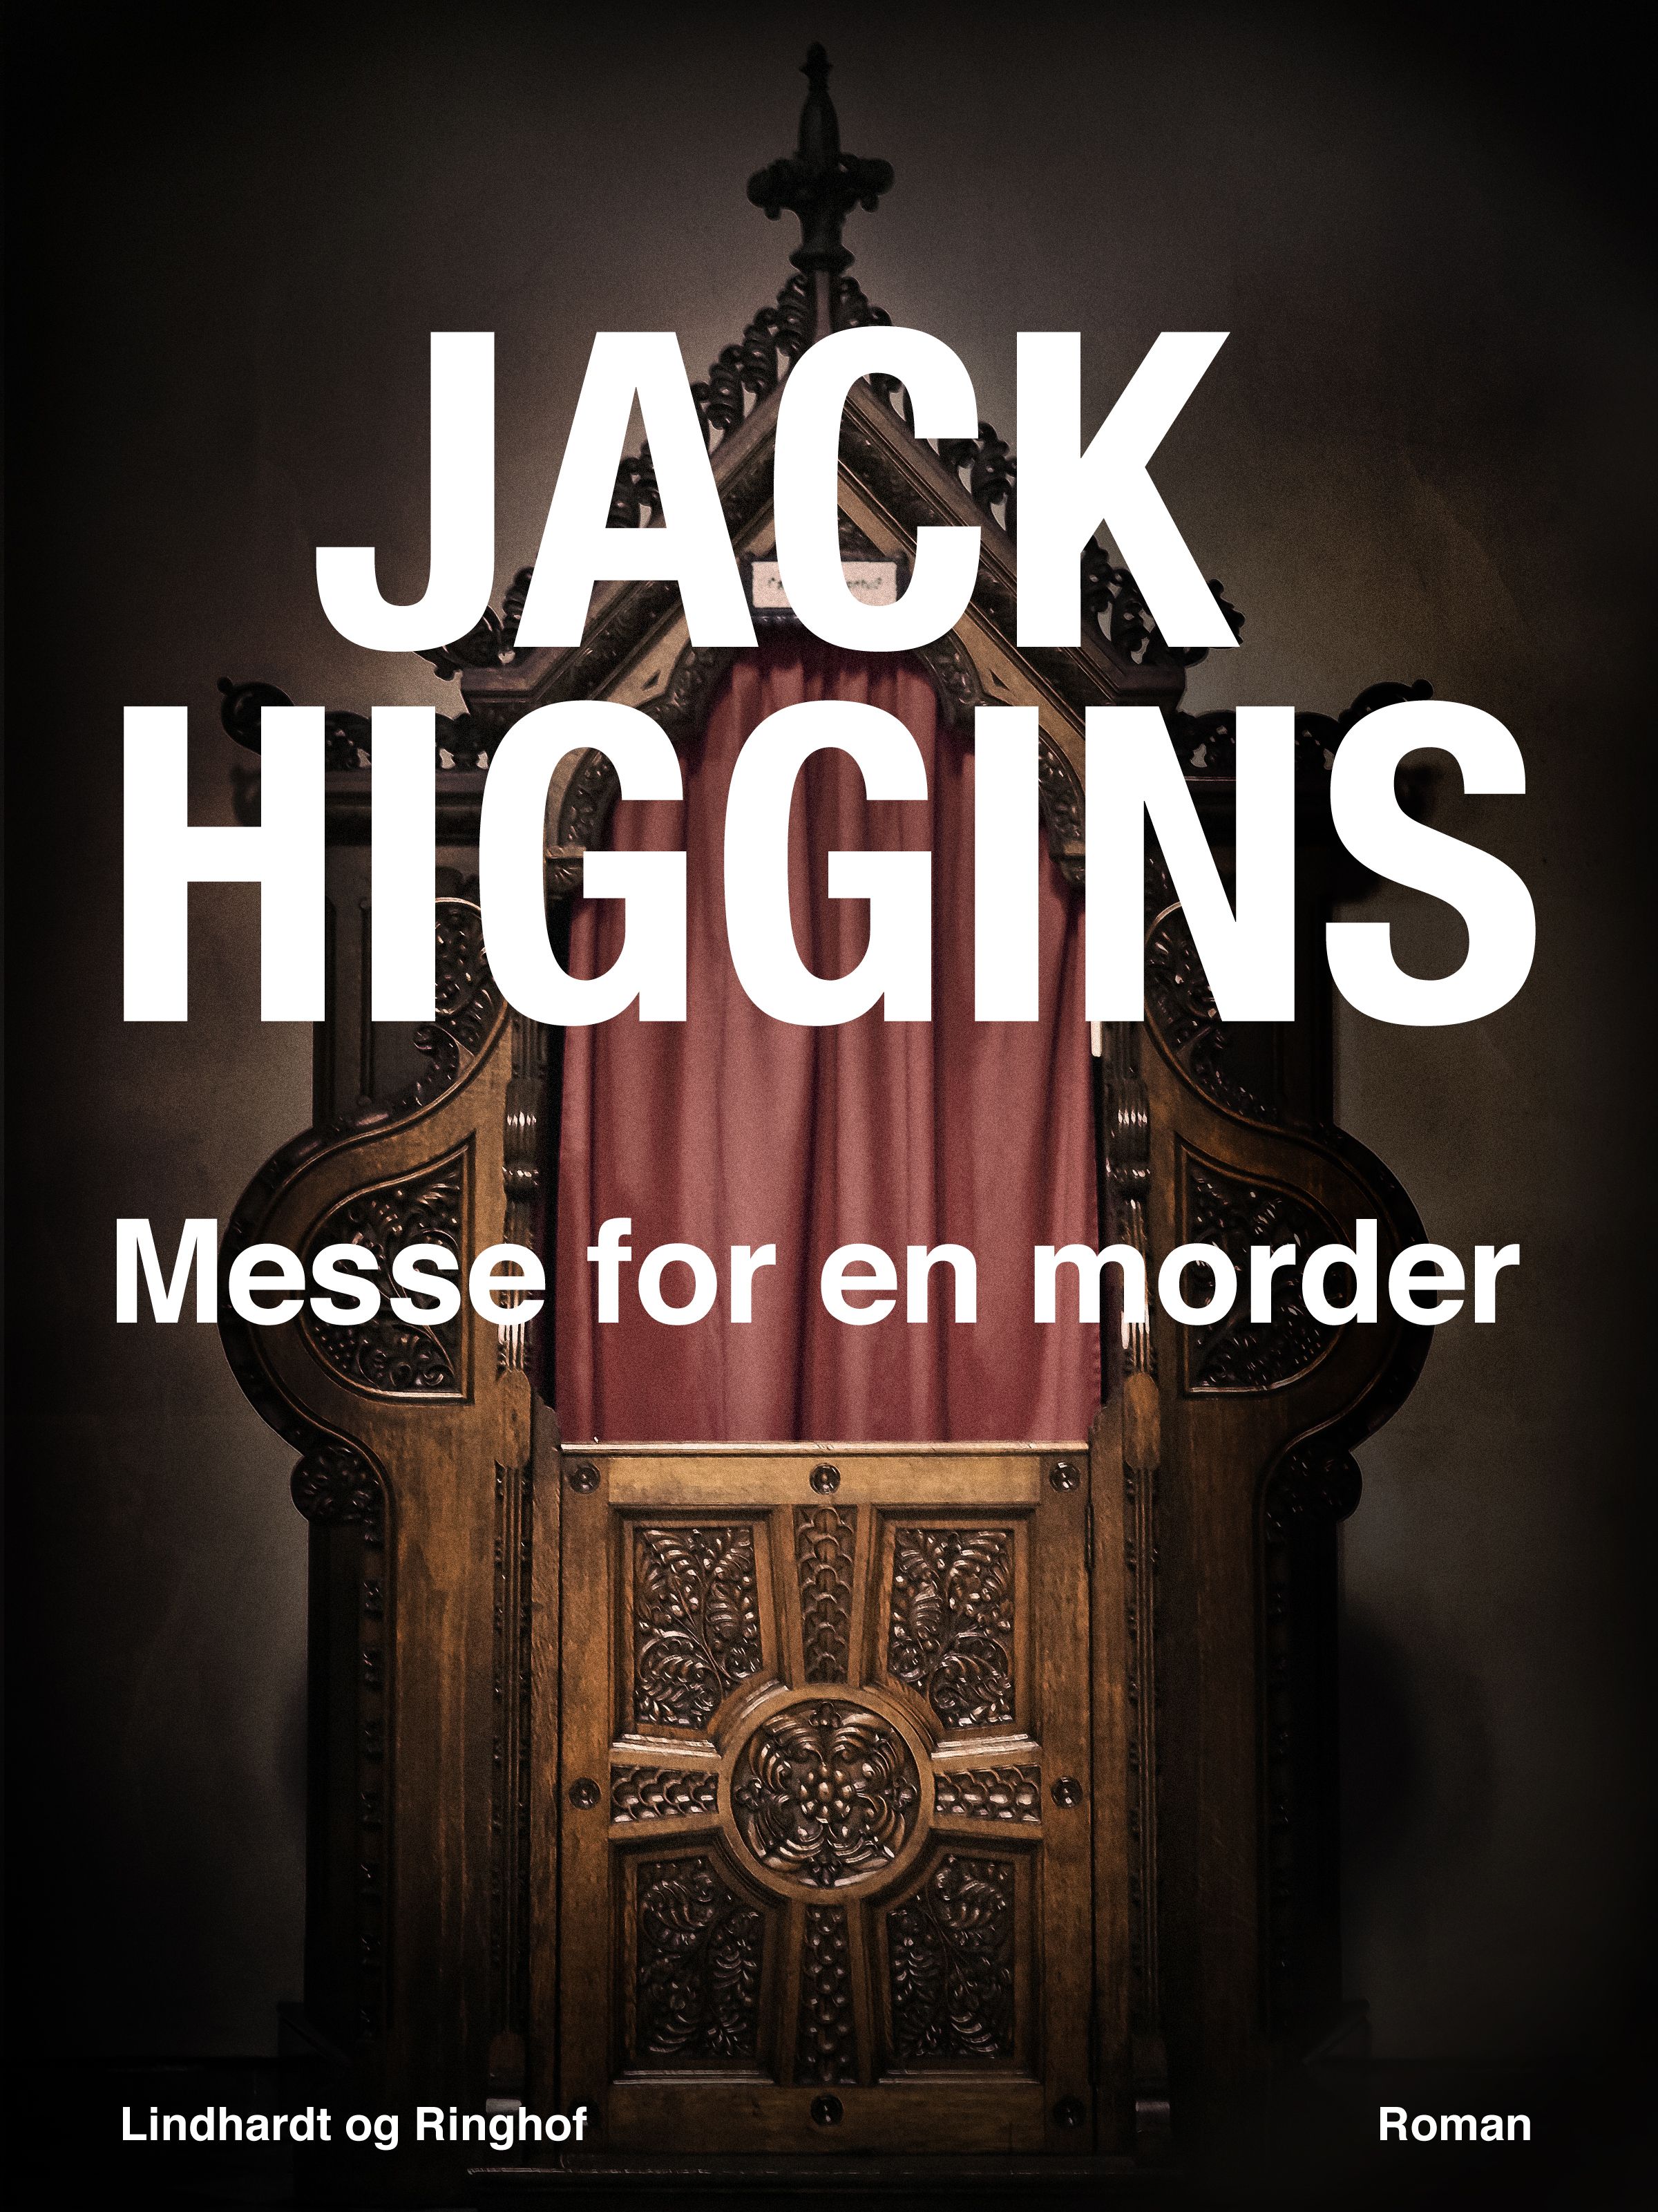 Messe for en morder, e-bok av Jack Higgins